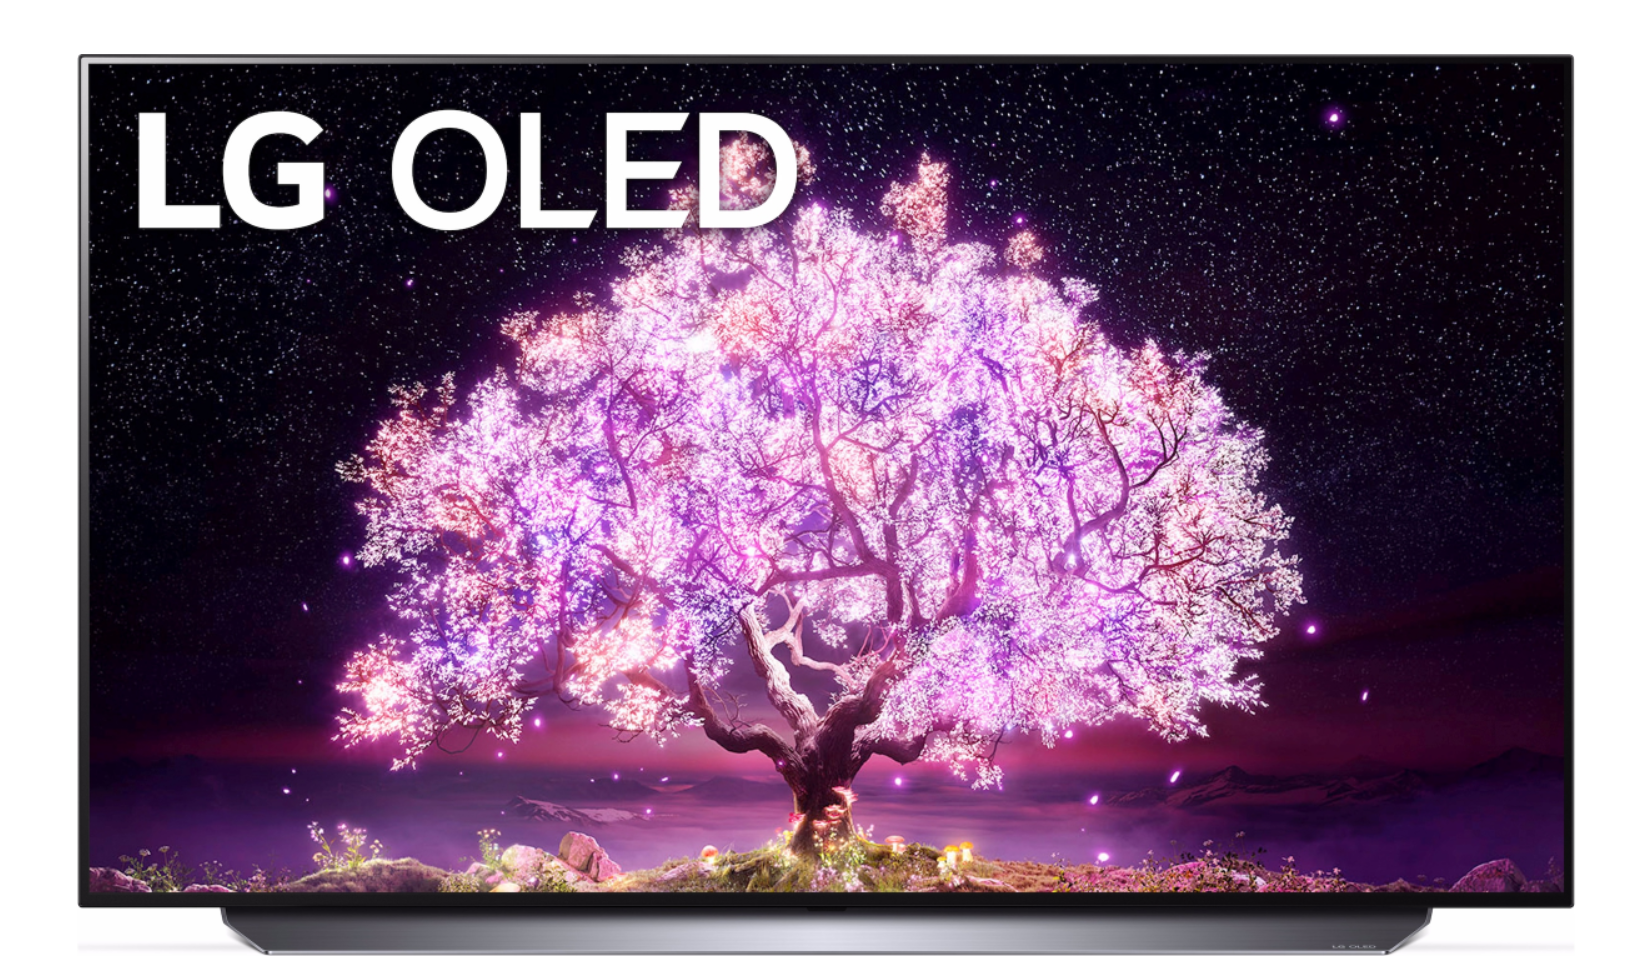 LG TV Aktion auf OLED TVs mit Bestpreisen